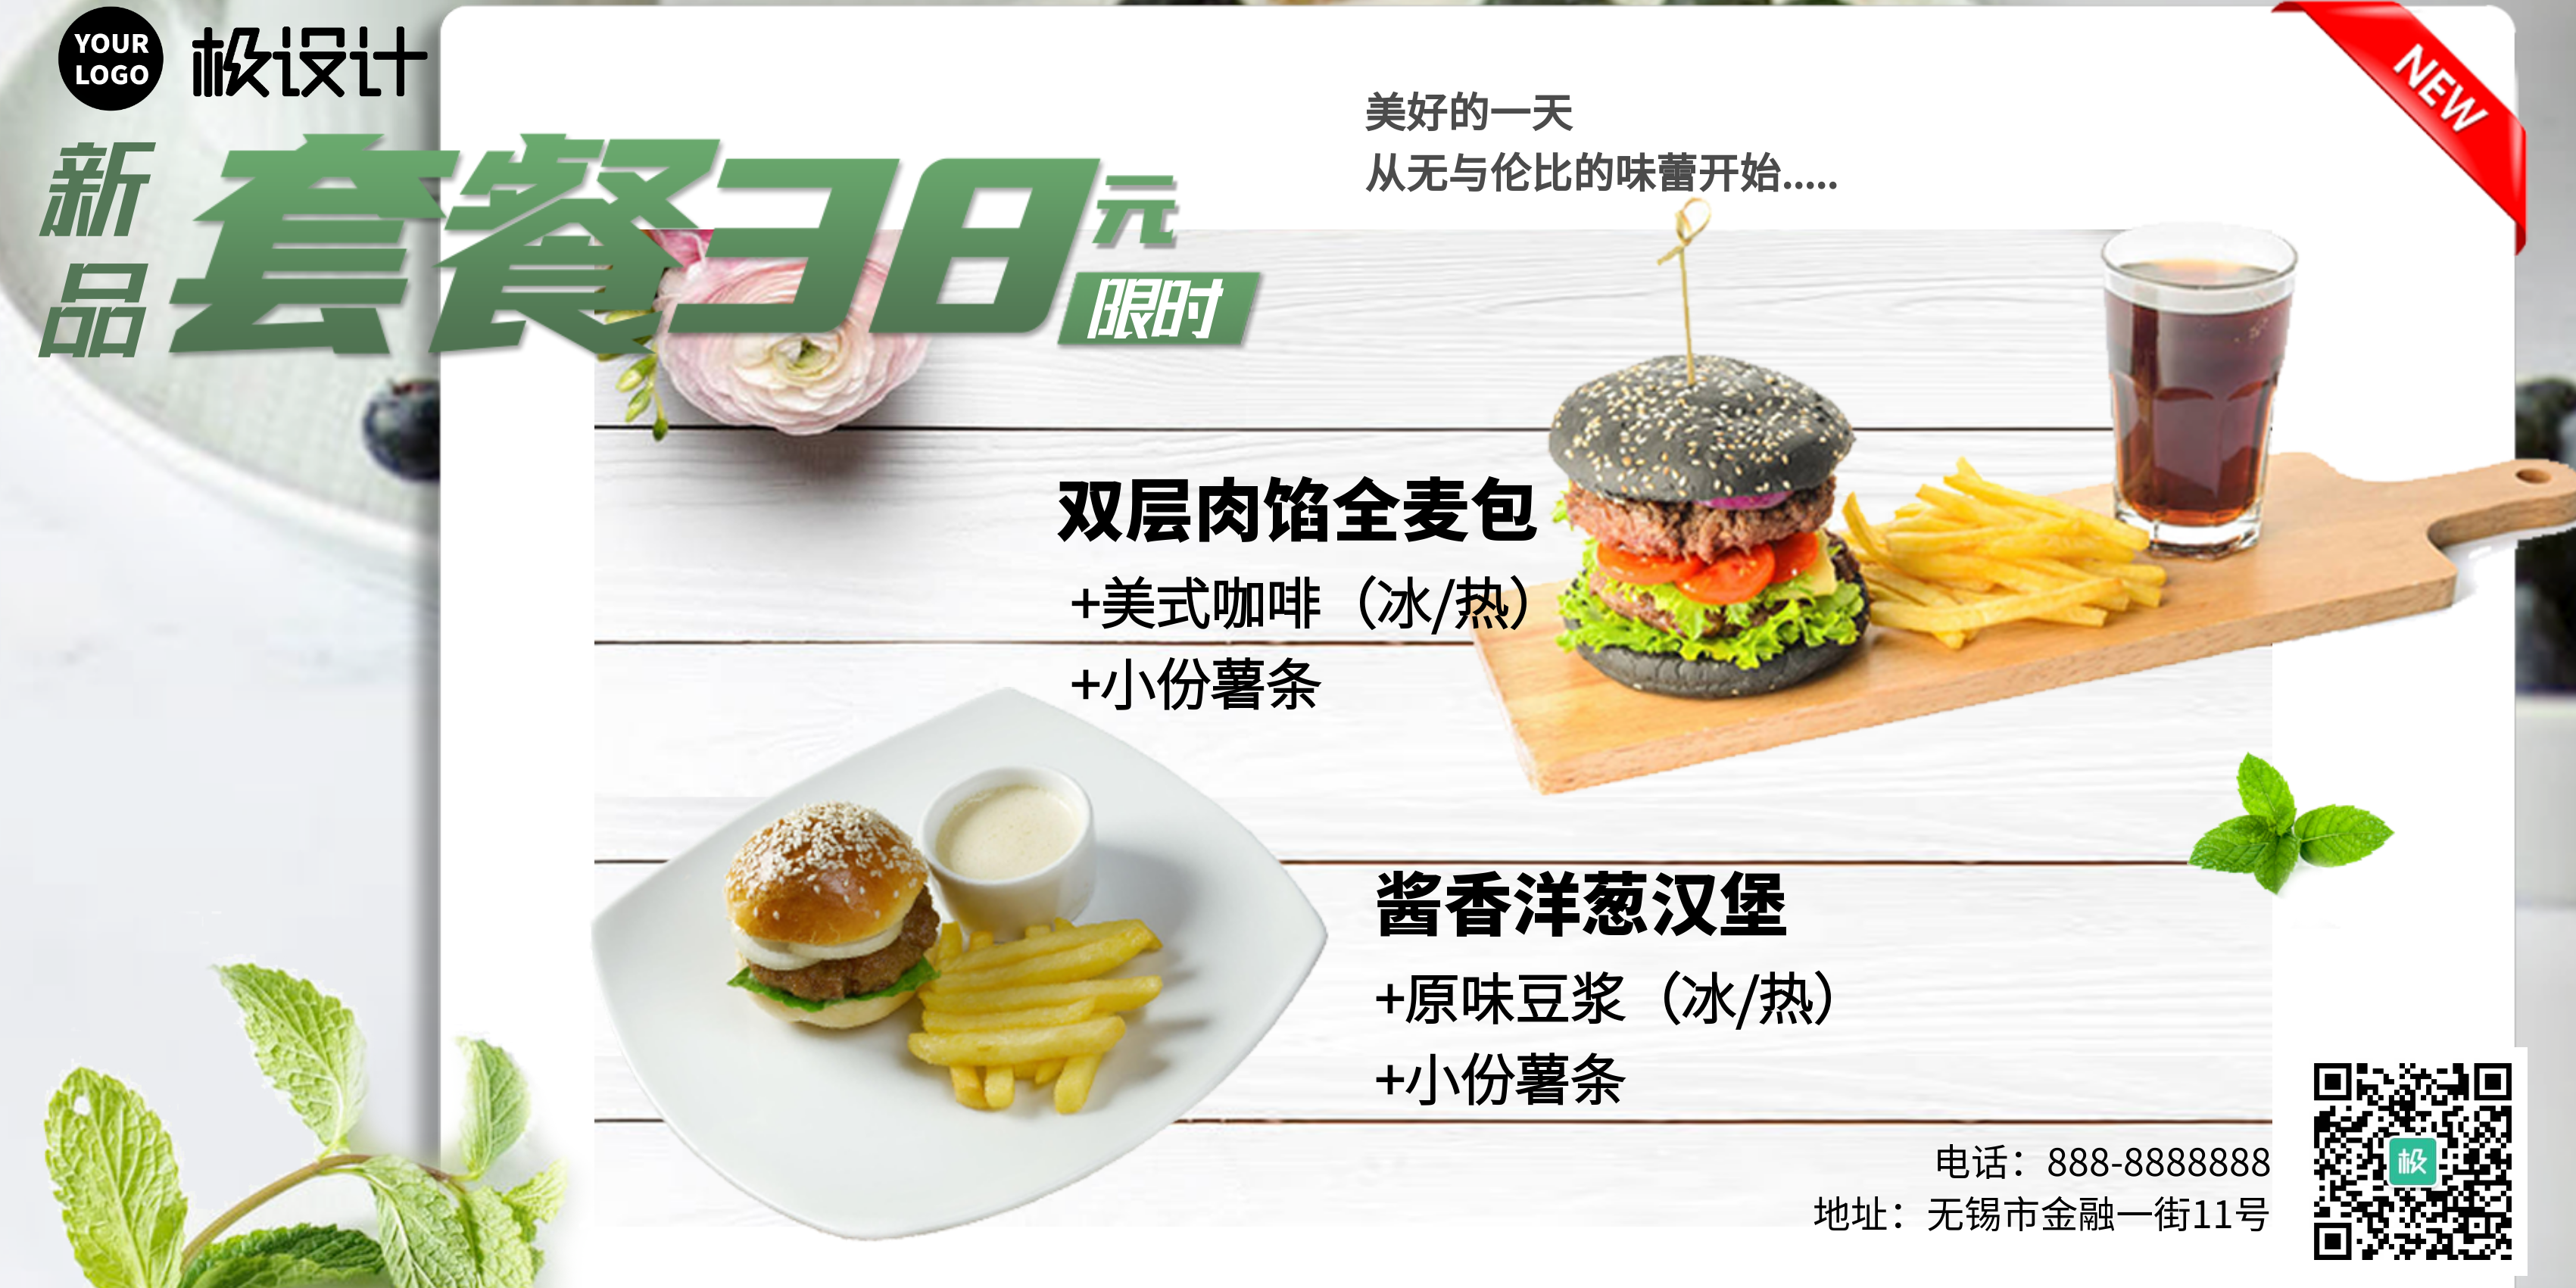 快餐小吃新品汉堡展示商业屏显海报